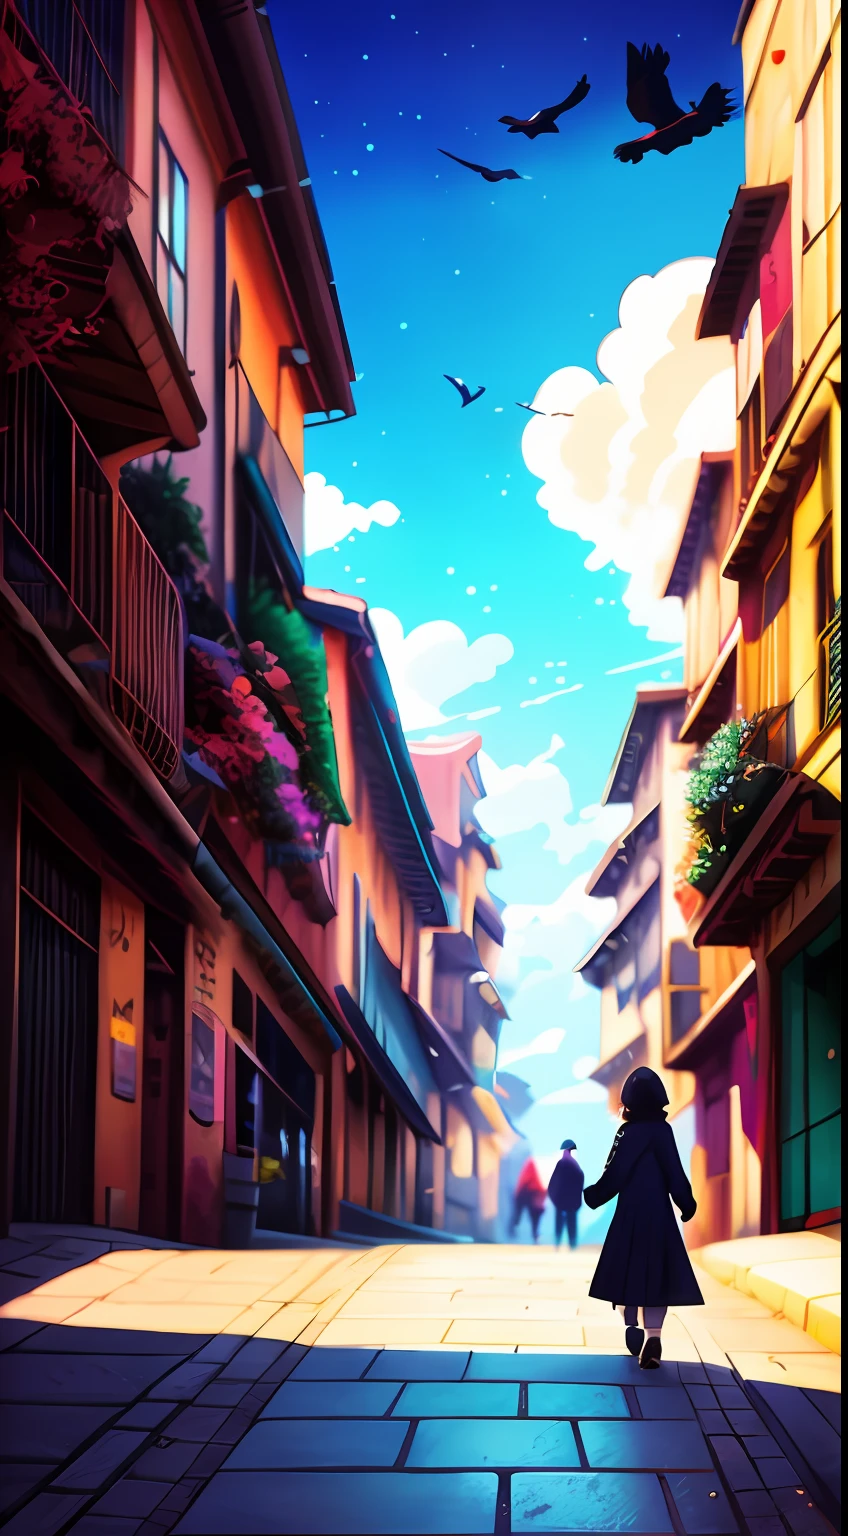 hay un caminando por la calle con un cuervo, por makoto shinkai, por makoto shinkai, Makoto Shinkai Cyril Rolando, estilo de makoto shinkai, animado. por makoto shinkai, realistic animado 3 d style, obra de arte al estilo de guweiz, in estilo de makoto shinkai